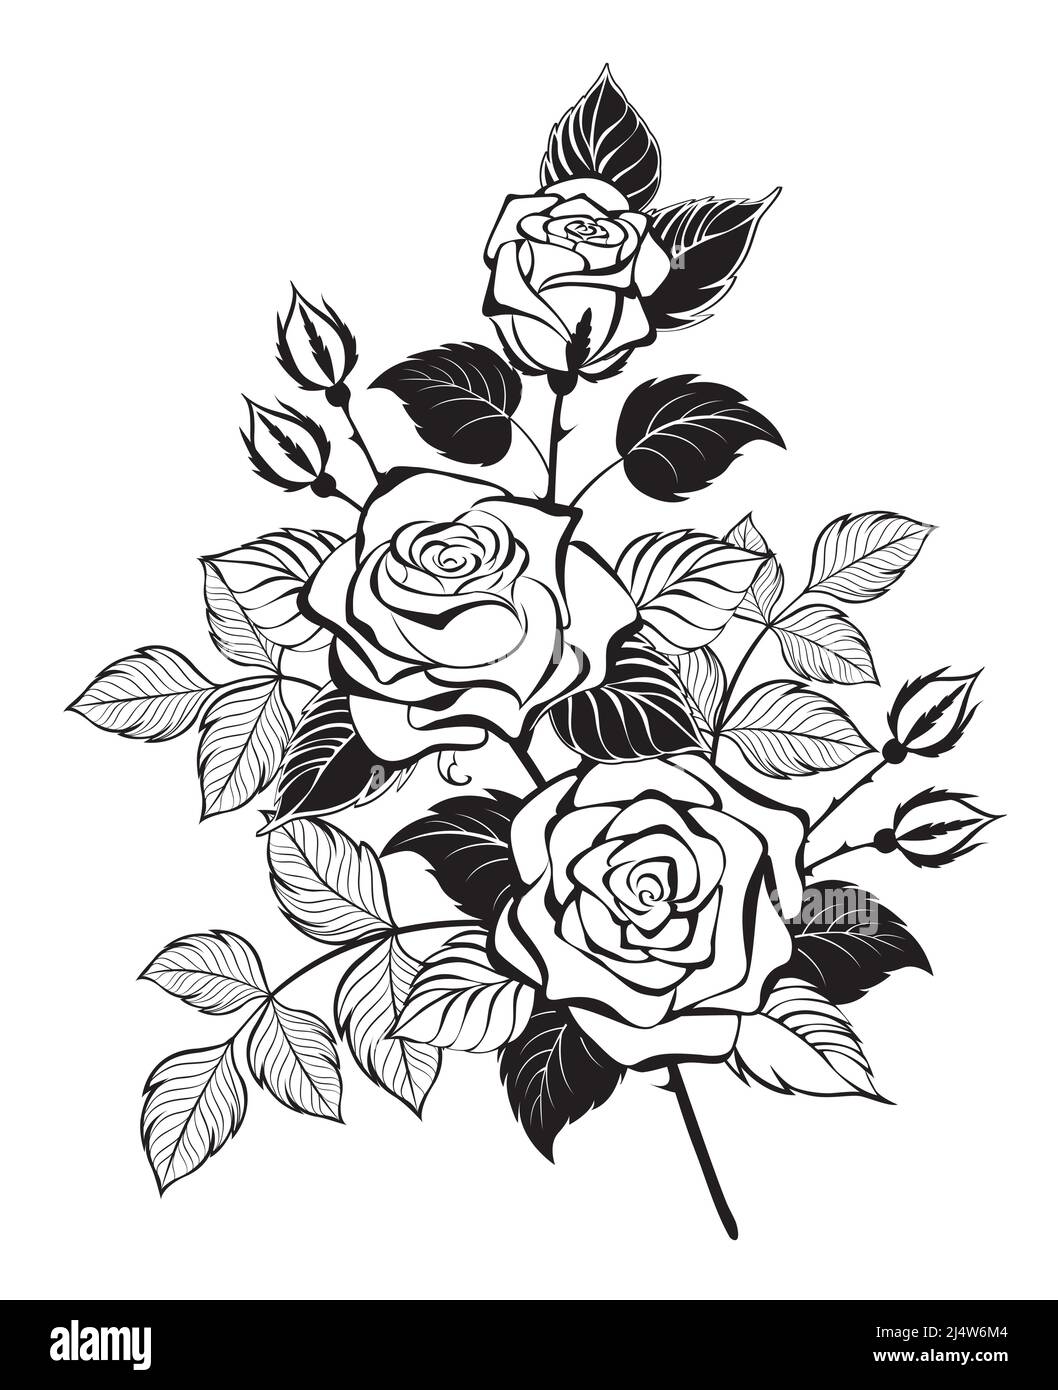 Künstlerisch gezeichnete, umrissene Zeichnung, Rosenzweige mit drei blühenden Knospen und silhouettierten Blättern. Tattoo-Stil. Stock Vektor